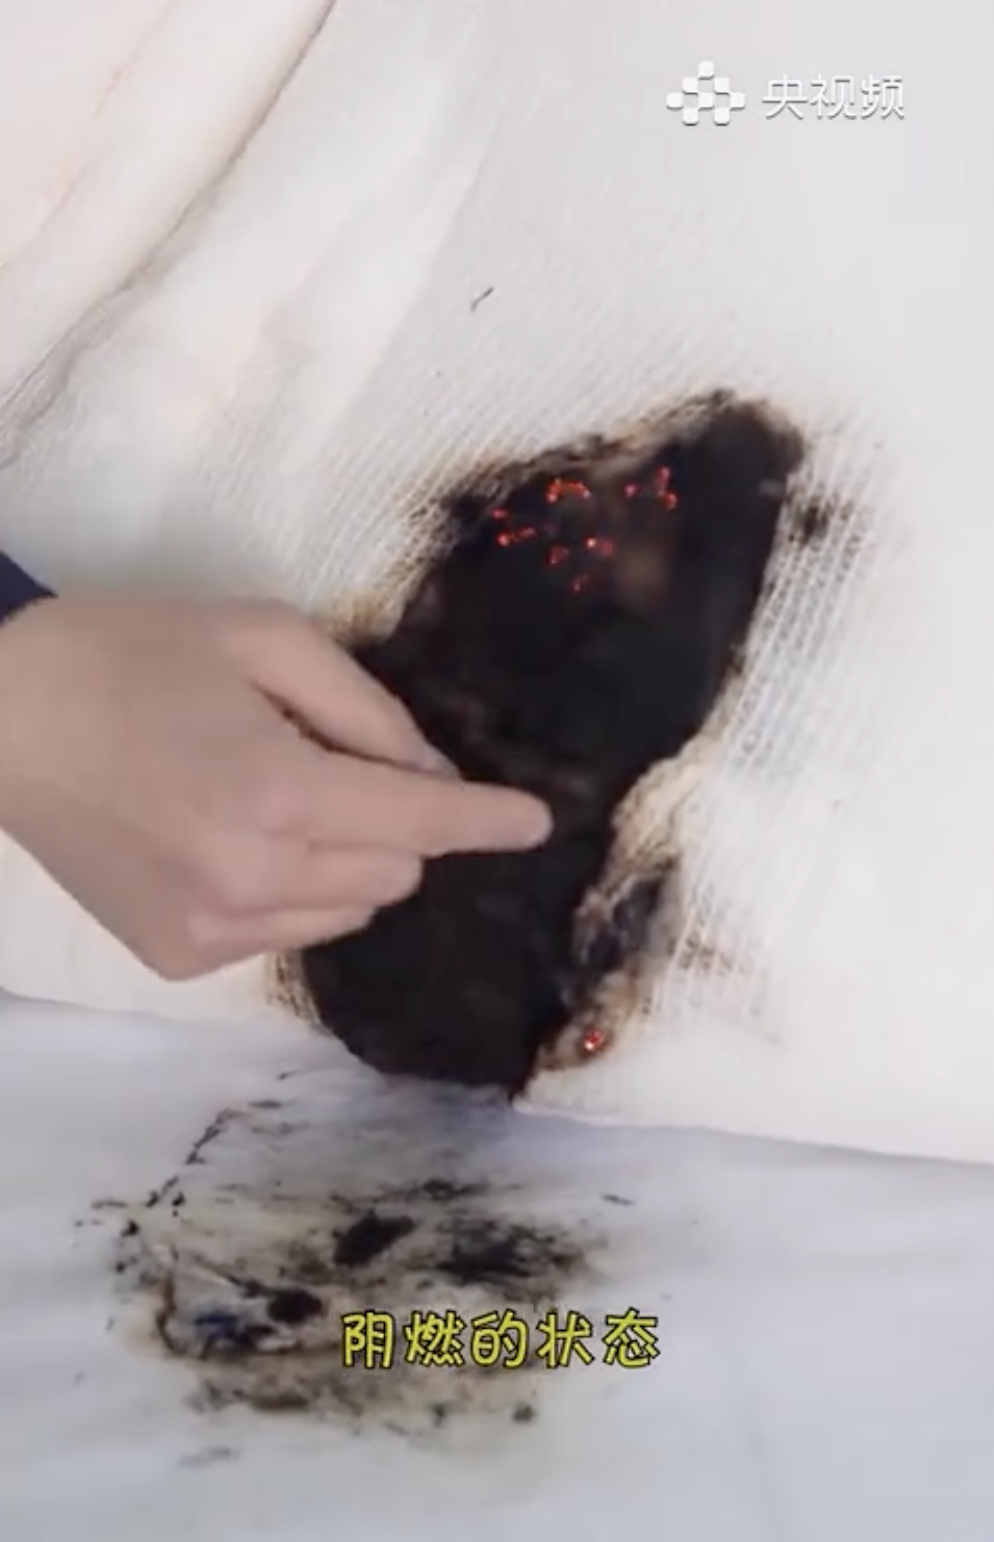 電熱氈漏電可導致棉被著火。